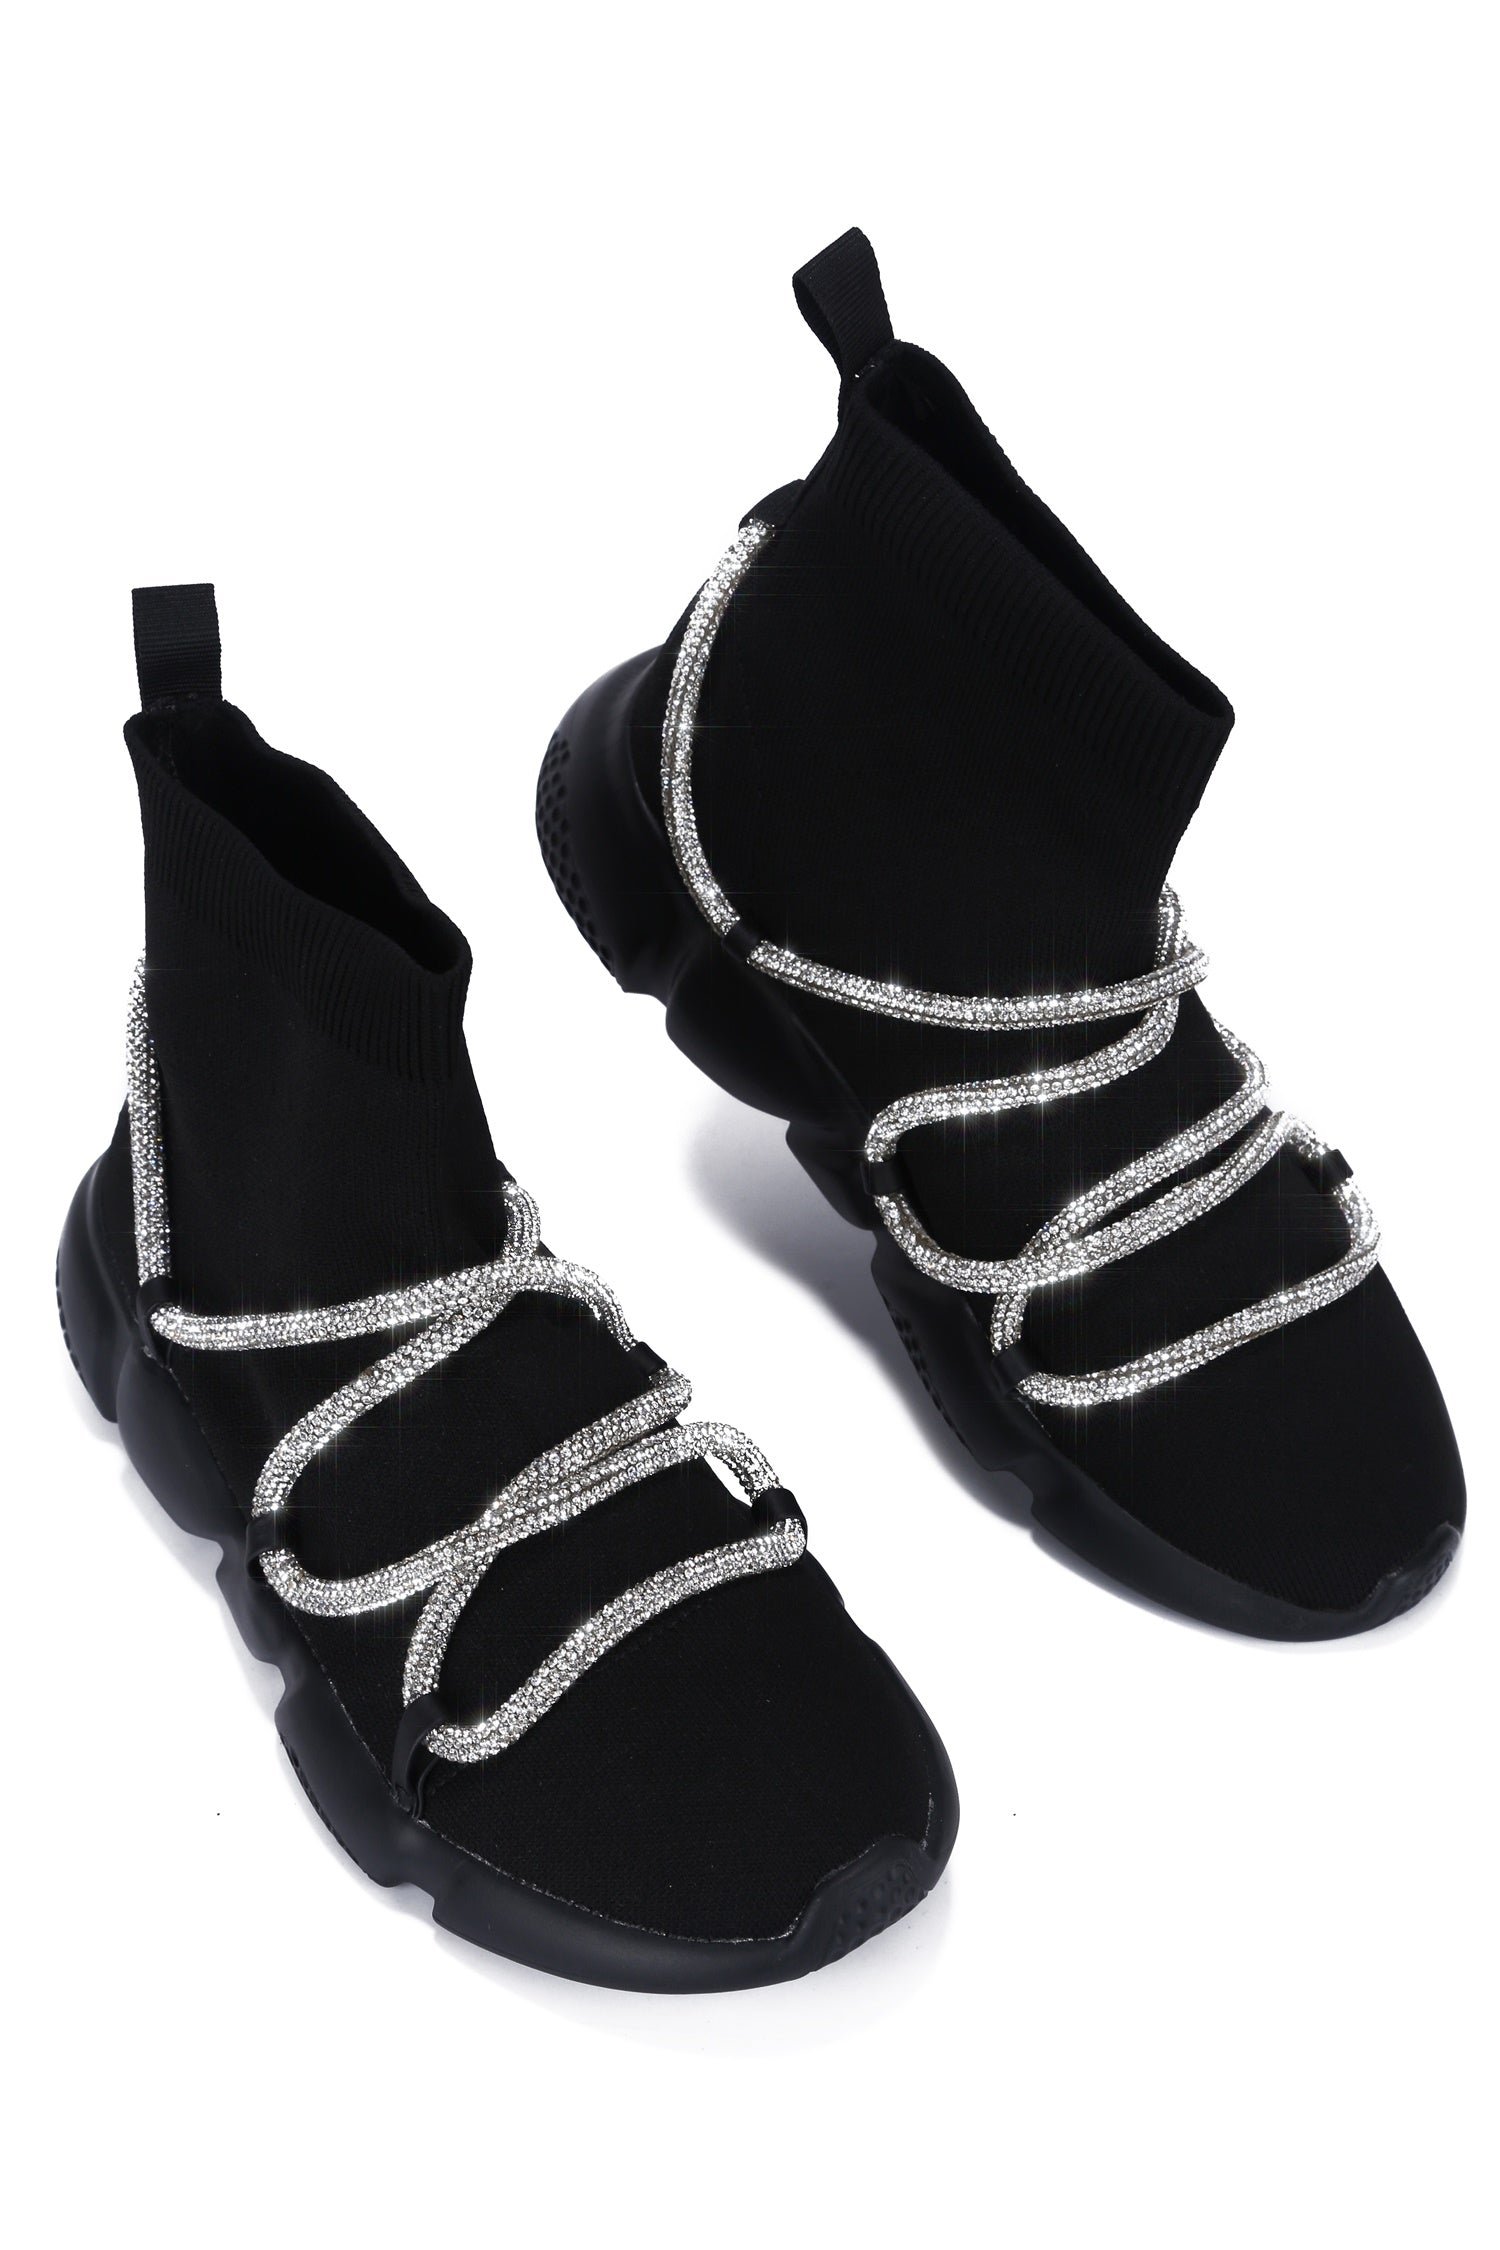 UrbanOG - Radiate Rhinestone Rope High Top Knit Sneaker - SNEAKERS